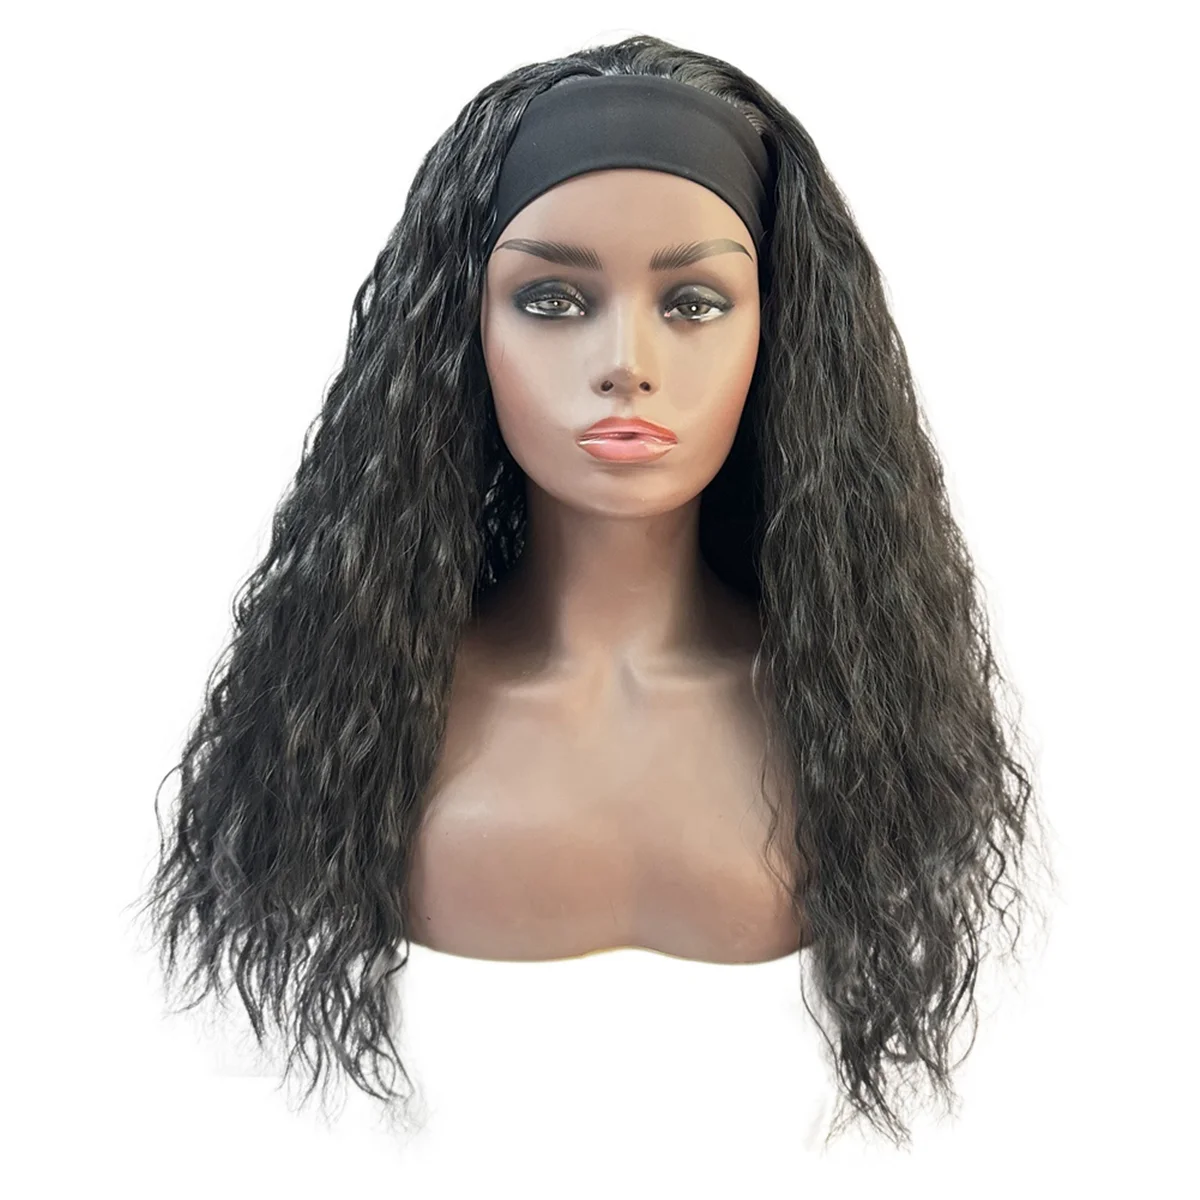 

Женский парик с длинными вьющимися волосами WIND FLYING, черный парик длиной 22 дюйма, полный комплект с пушистыми волосами, парик из химического волокна